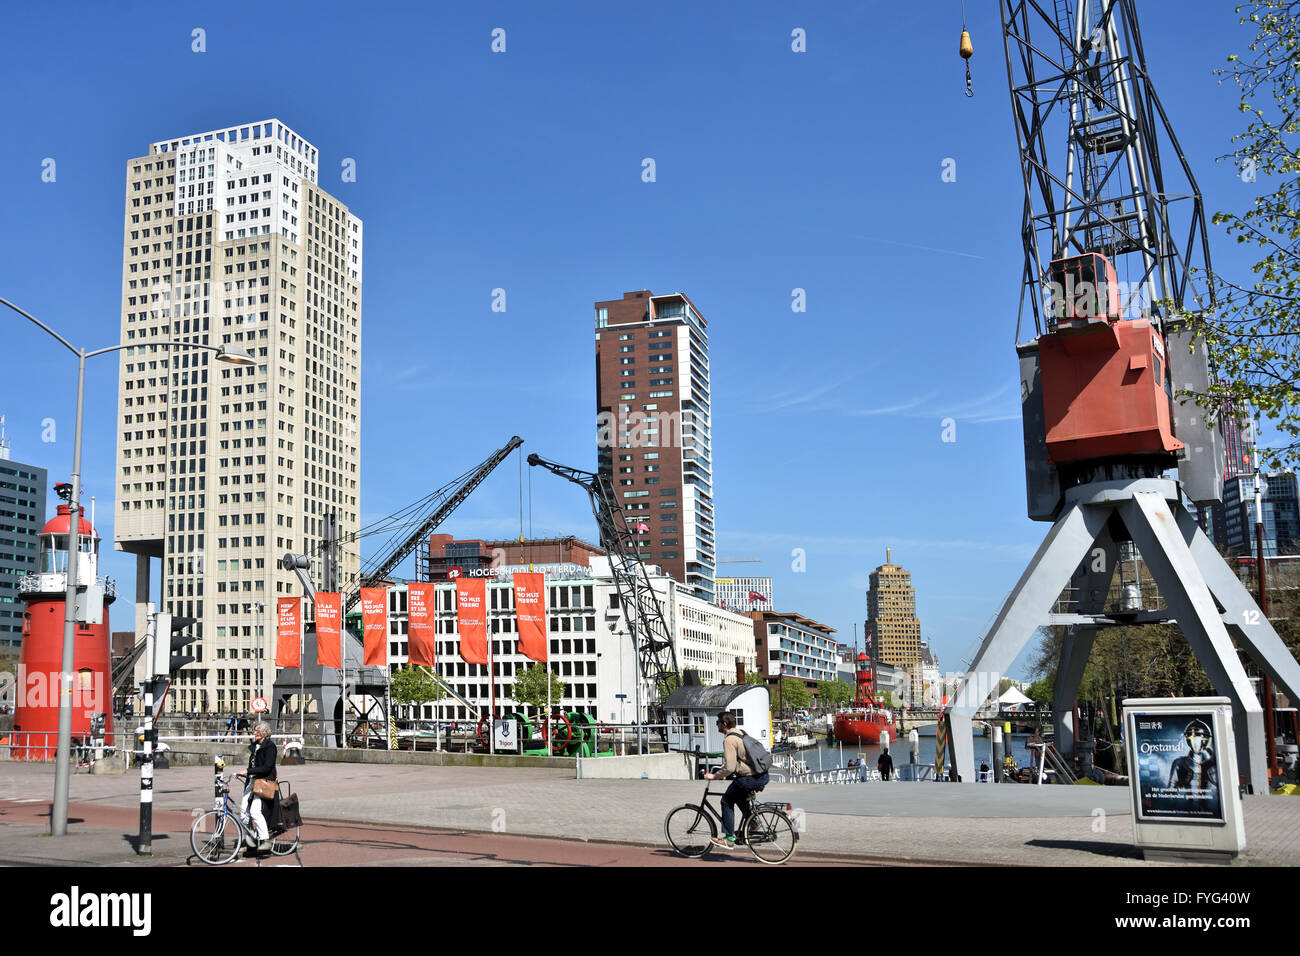 Maritime Museum (Wassertaxi) Rotterdam Niederlande niederländische alten Hafen Hafen (Hintergrund Hogeschool Borgoña) Stockfoto